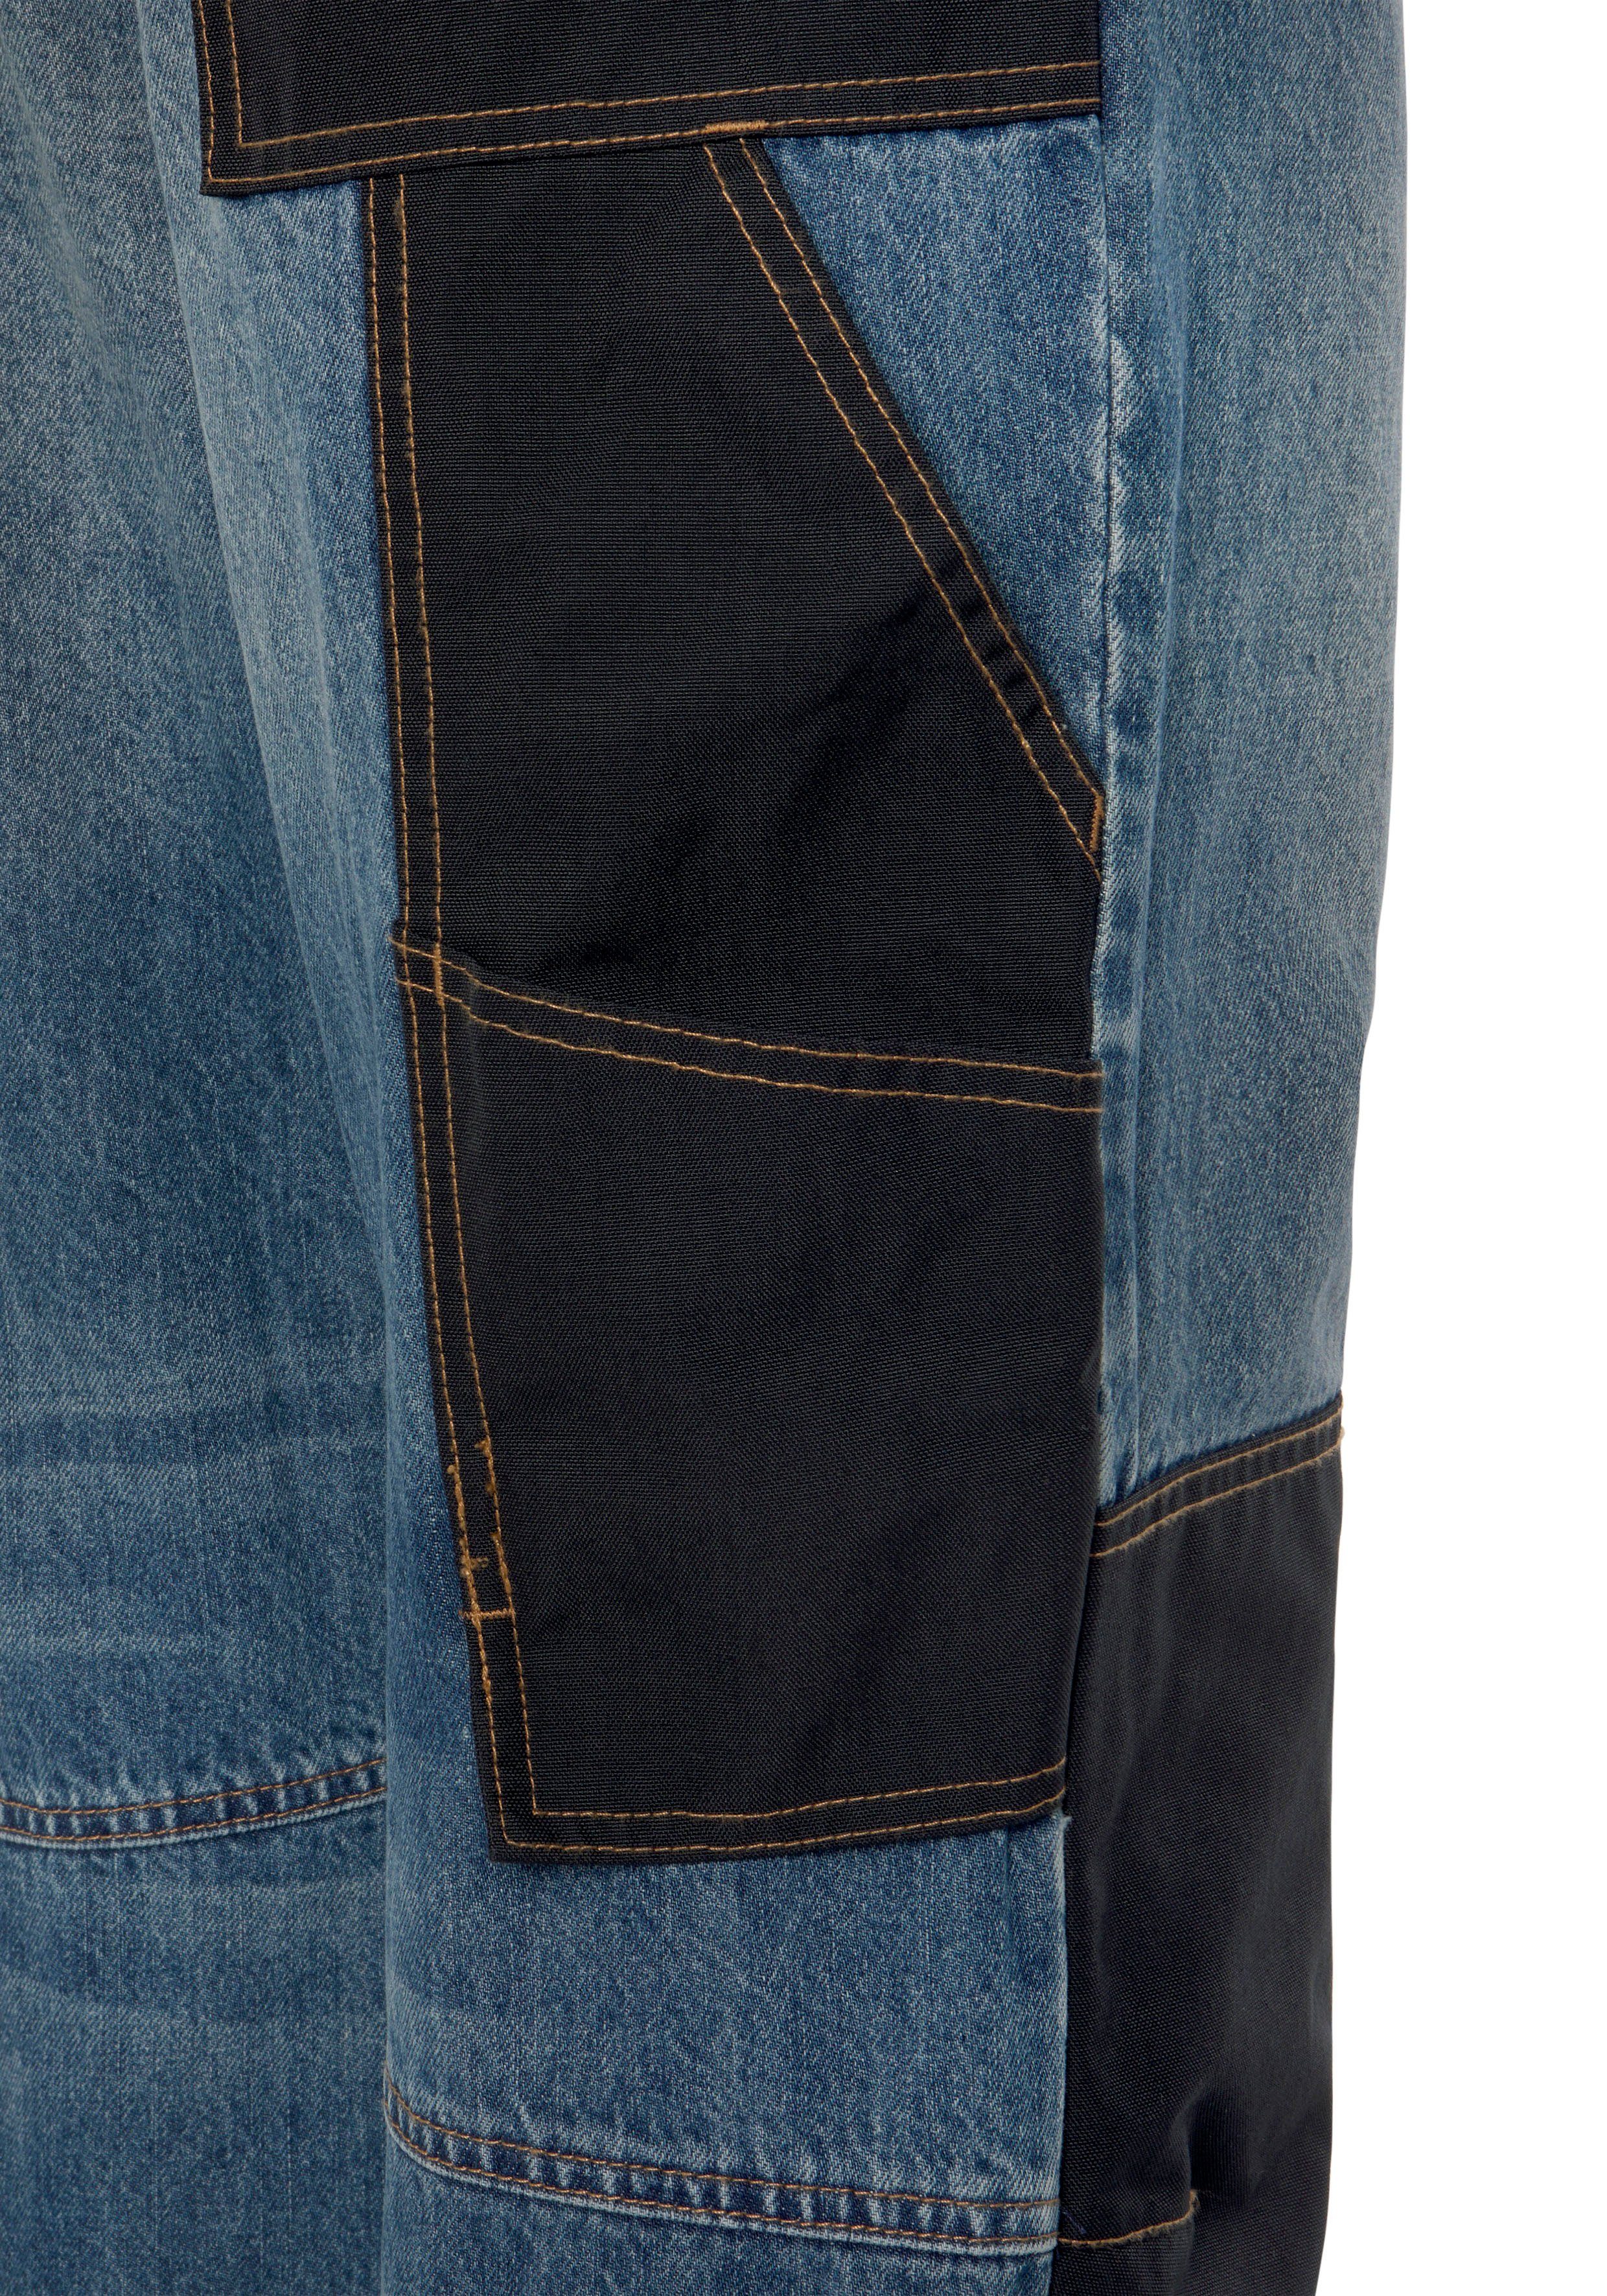 Baumwolle, Country robuster Arbeitshose praktischen Jeans 100% Jeansstoff, Bund, Taschen, Cordura mit Northern Multipocket (aus dehnbarem 9 comfort Knieverstärkung aus fit)